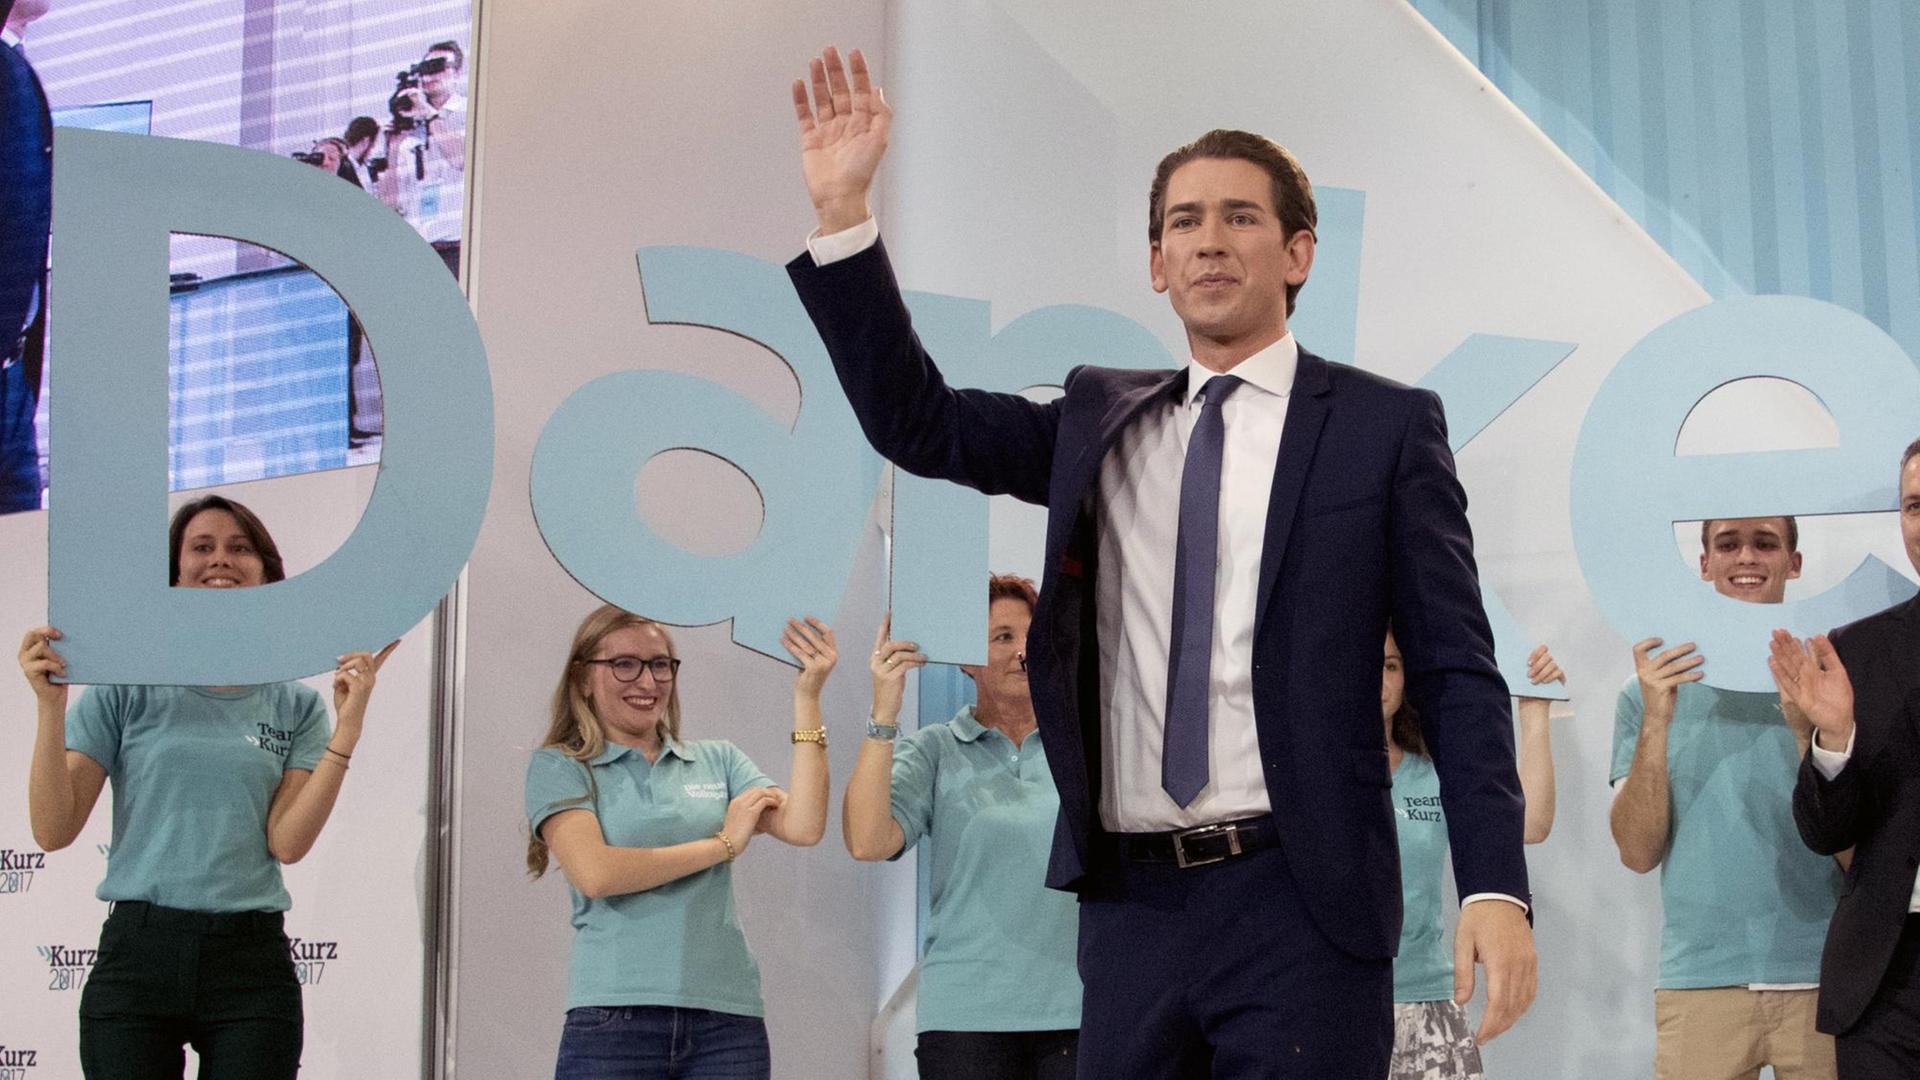 Der ÖVP-Vorsitzende Sebastian Kurz jubelt nach dem Sieg seiner Partei bei der Nationalratswahl in Österreich.